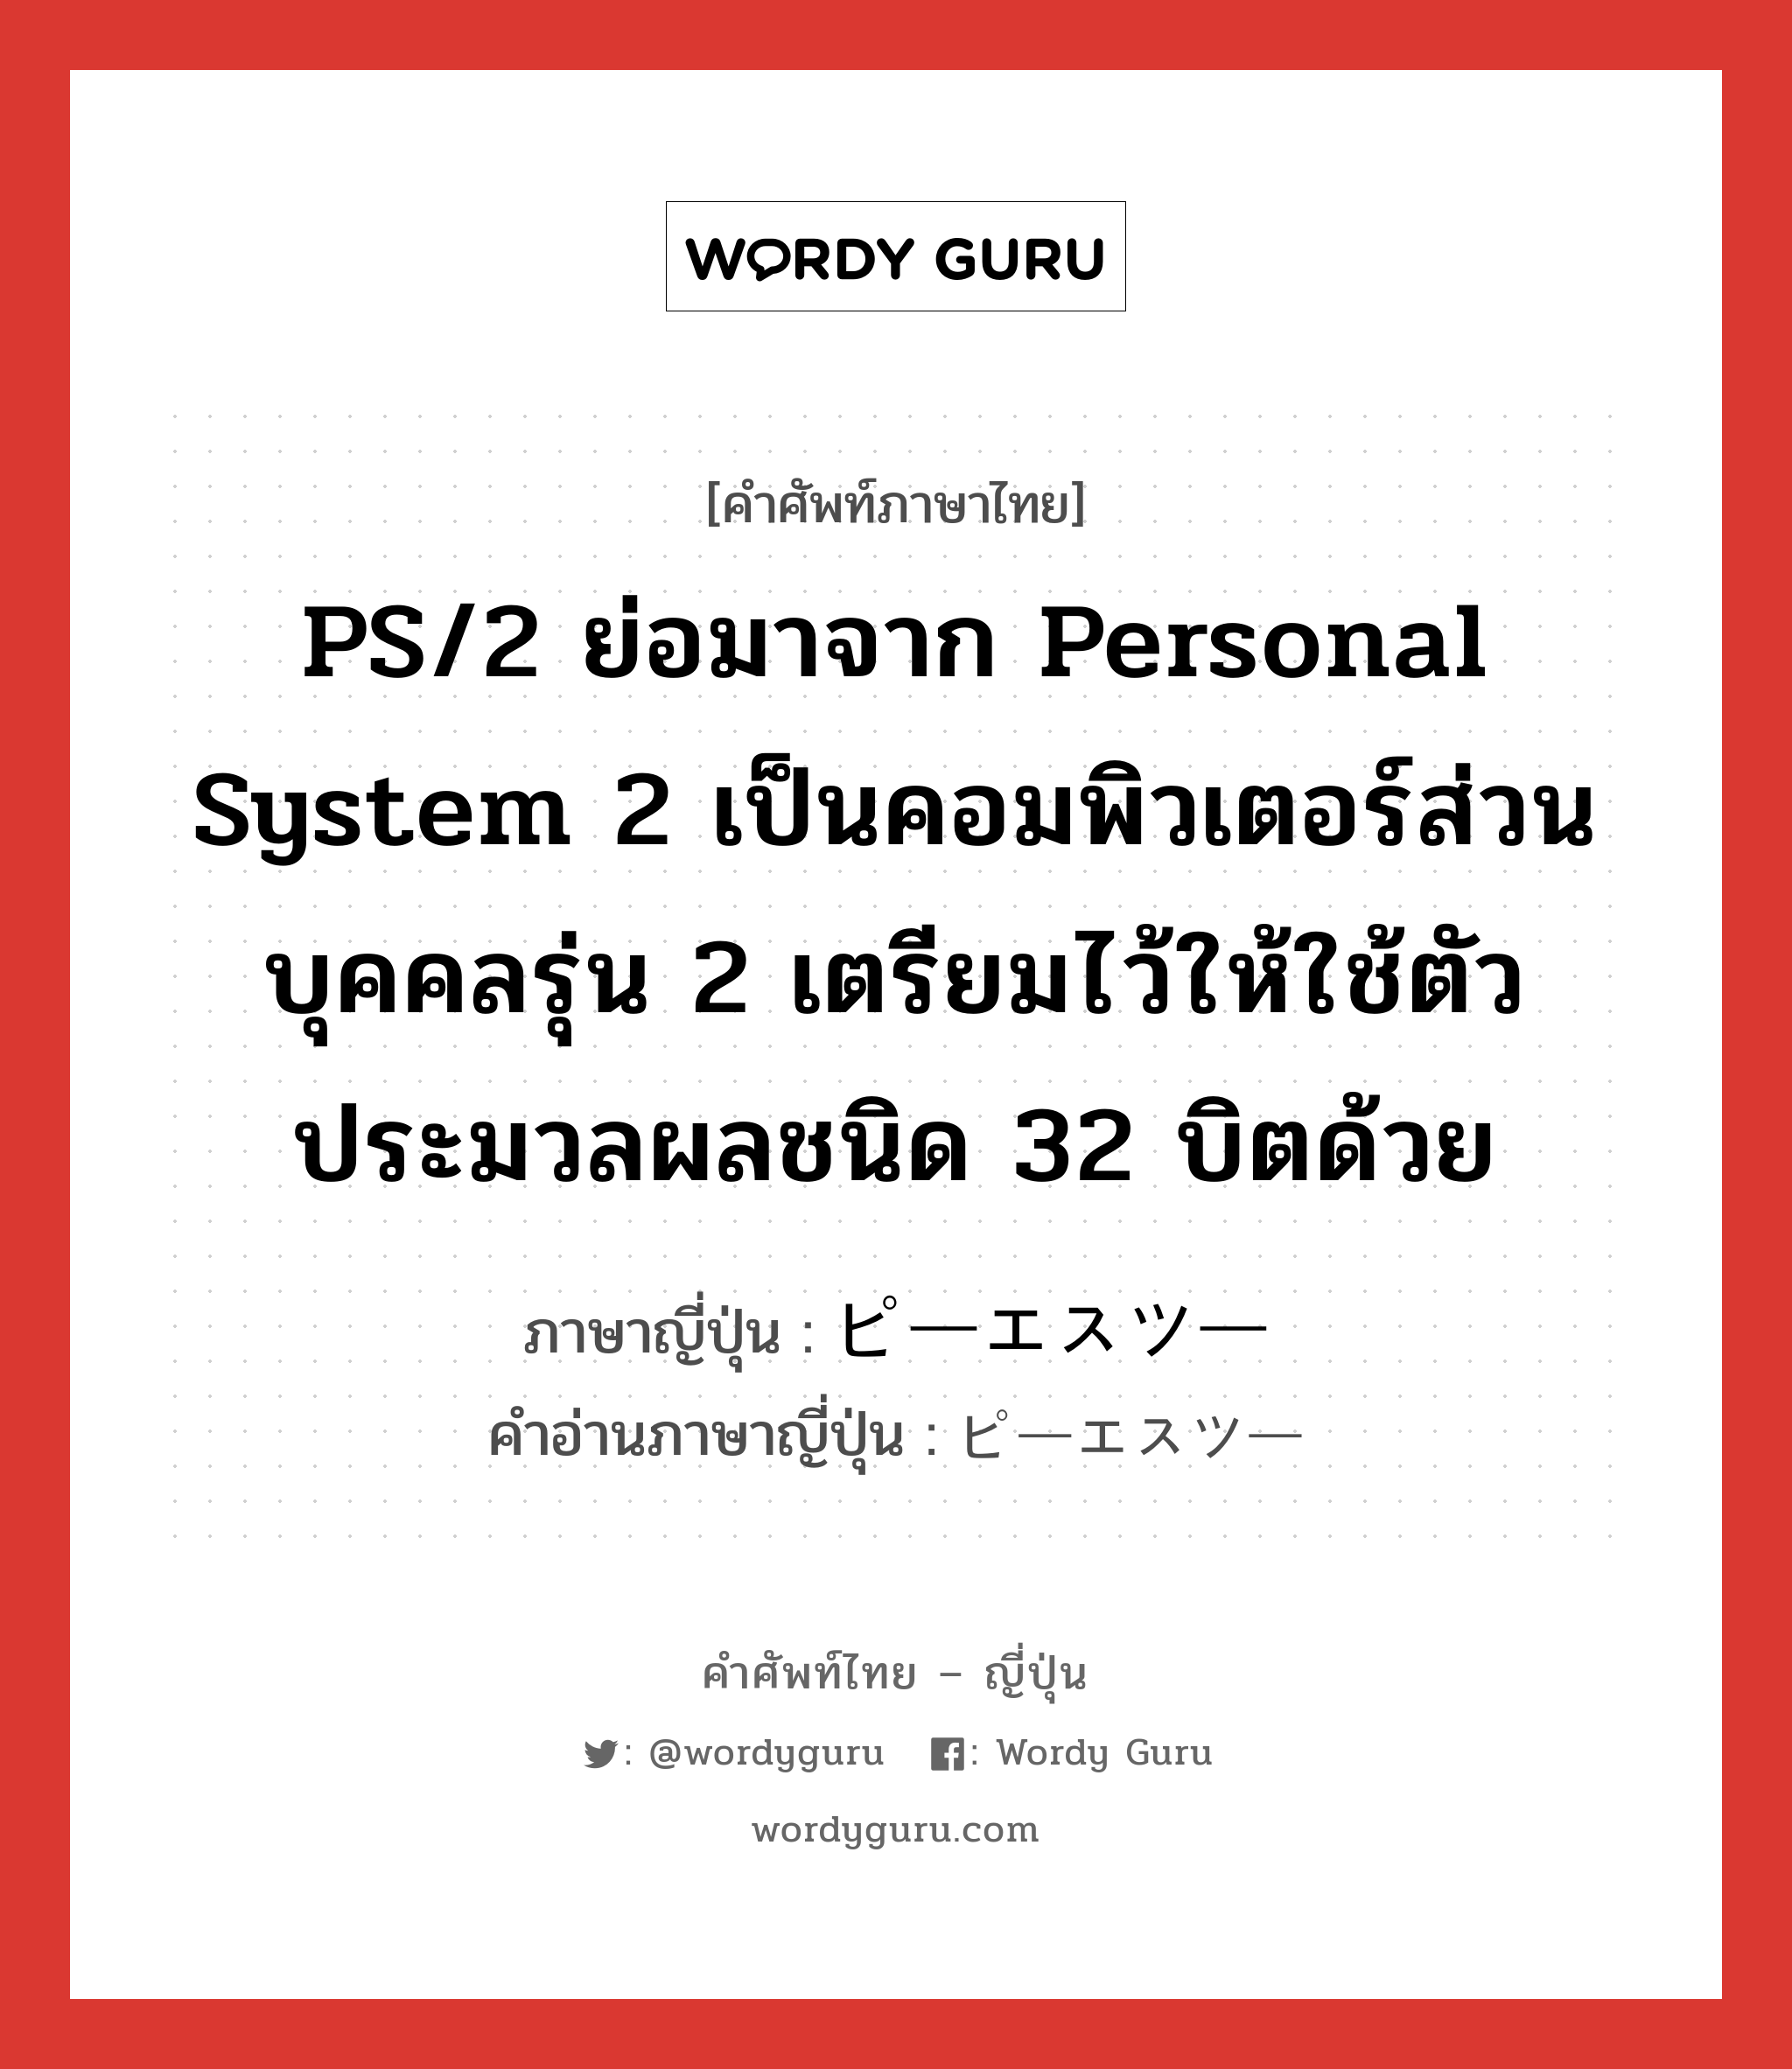 PS/2 ย่อมาจาก personal system 2 เป็นคอมพิวเตอร์ส่วนบุคคลรุ่น 2 เตรียมไว้ให้ใช้ตัวประมวลผลชนิด 32 บิตด้วย ภาษาญี่ปุ่นคืออะไร, คำศัพท์ภาษาไทย - ญี่ปุ่น PS/2 ย่อมาจาก personal system 2 เป็นคอมพิวเตอร์ส่วนบุคคลรุ่น 2 เตรียมไว้ให้ใช้ตัวประมวลผลชนิด 32 บิตด้วย ภาษาญี่ปุ่น ピーエスツー คำอ่านภาษาญี่ปุ่น ピーエスツー หมวด n หมวด n